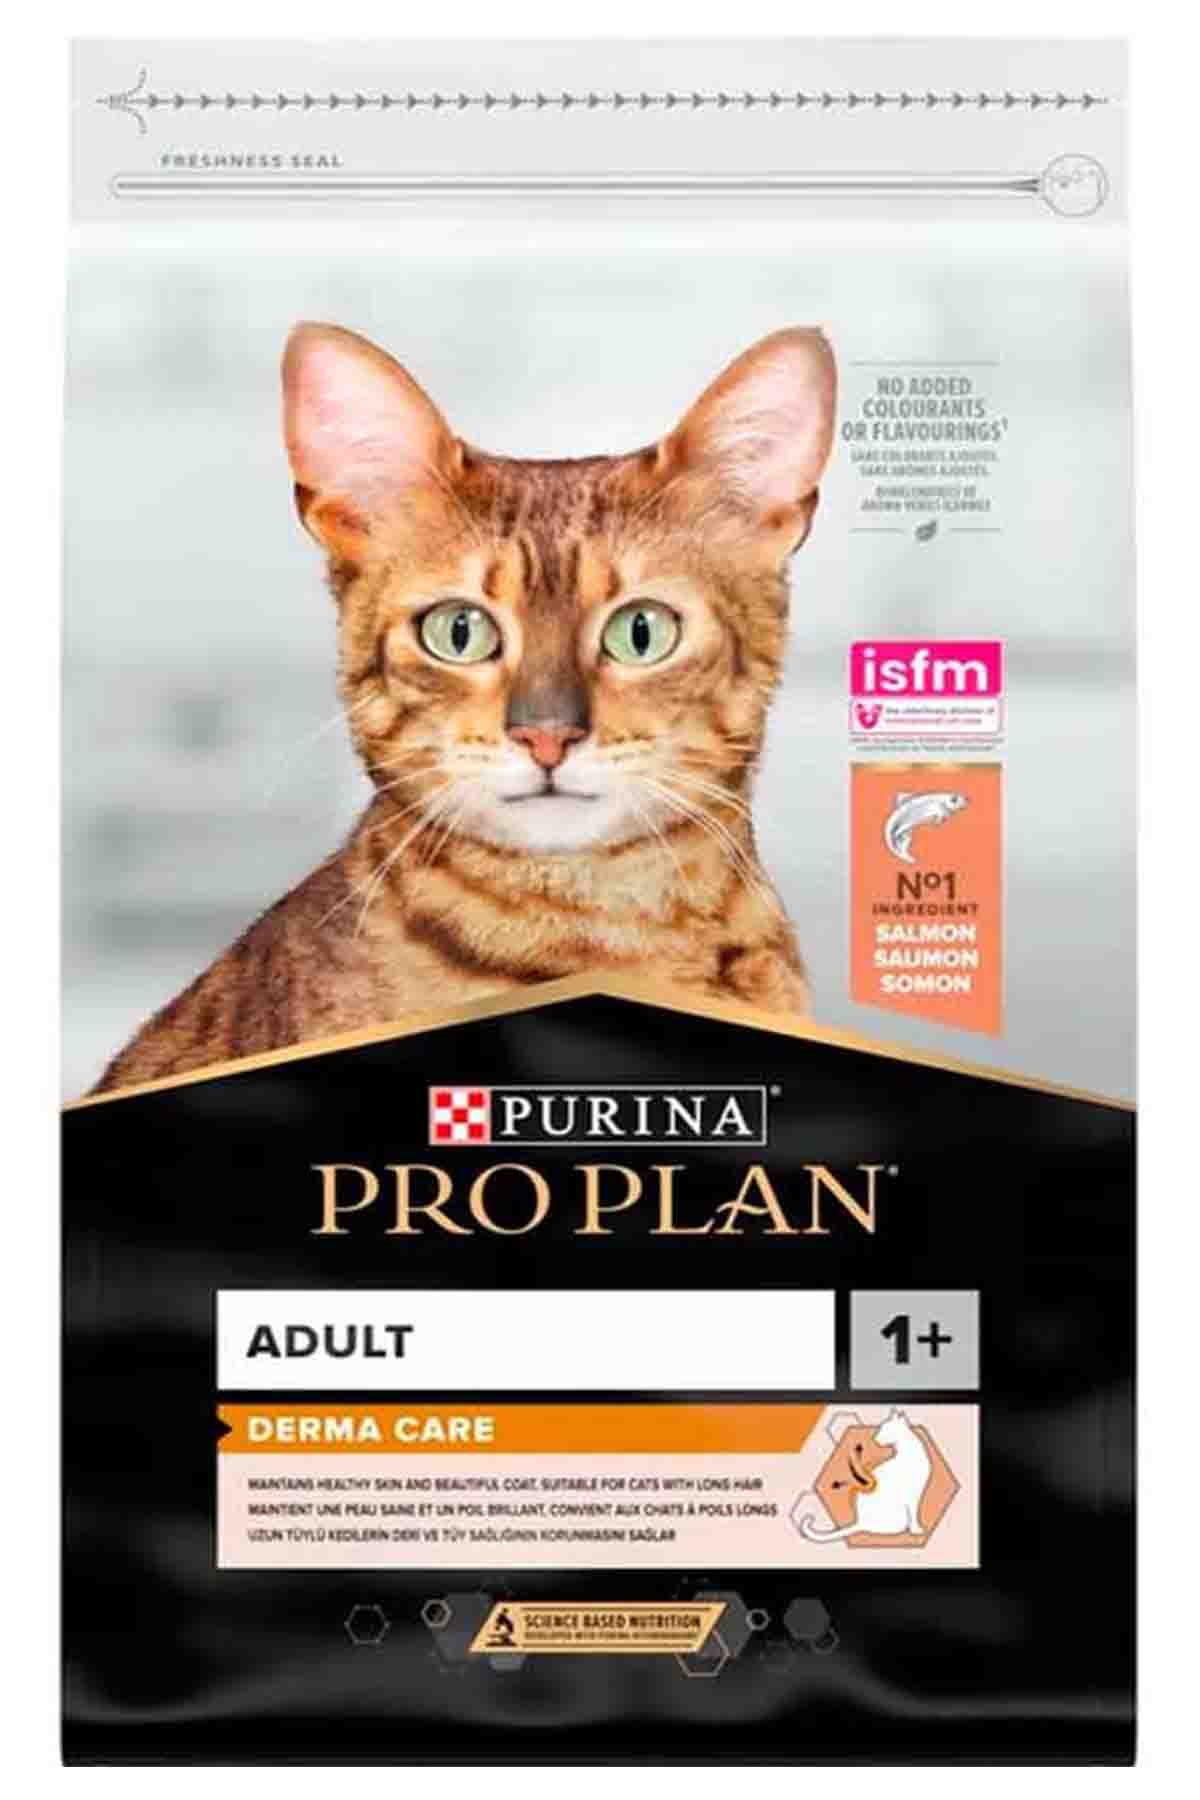 Pro Plan Elegant Somonlu Yetişkin Kedi Maması 3kg